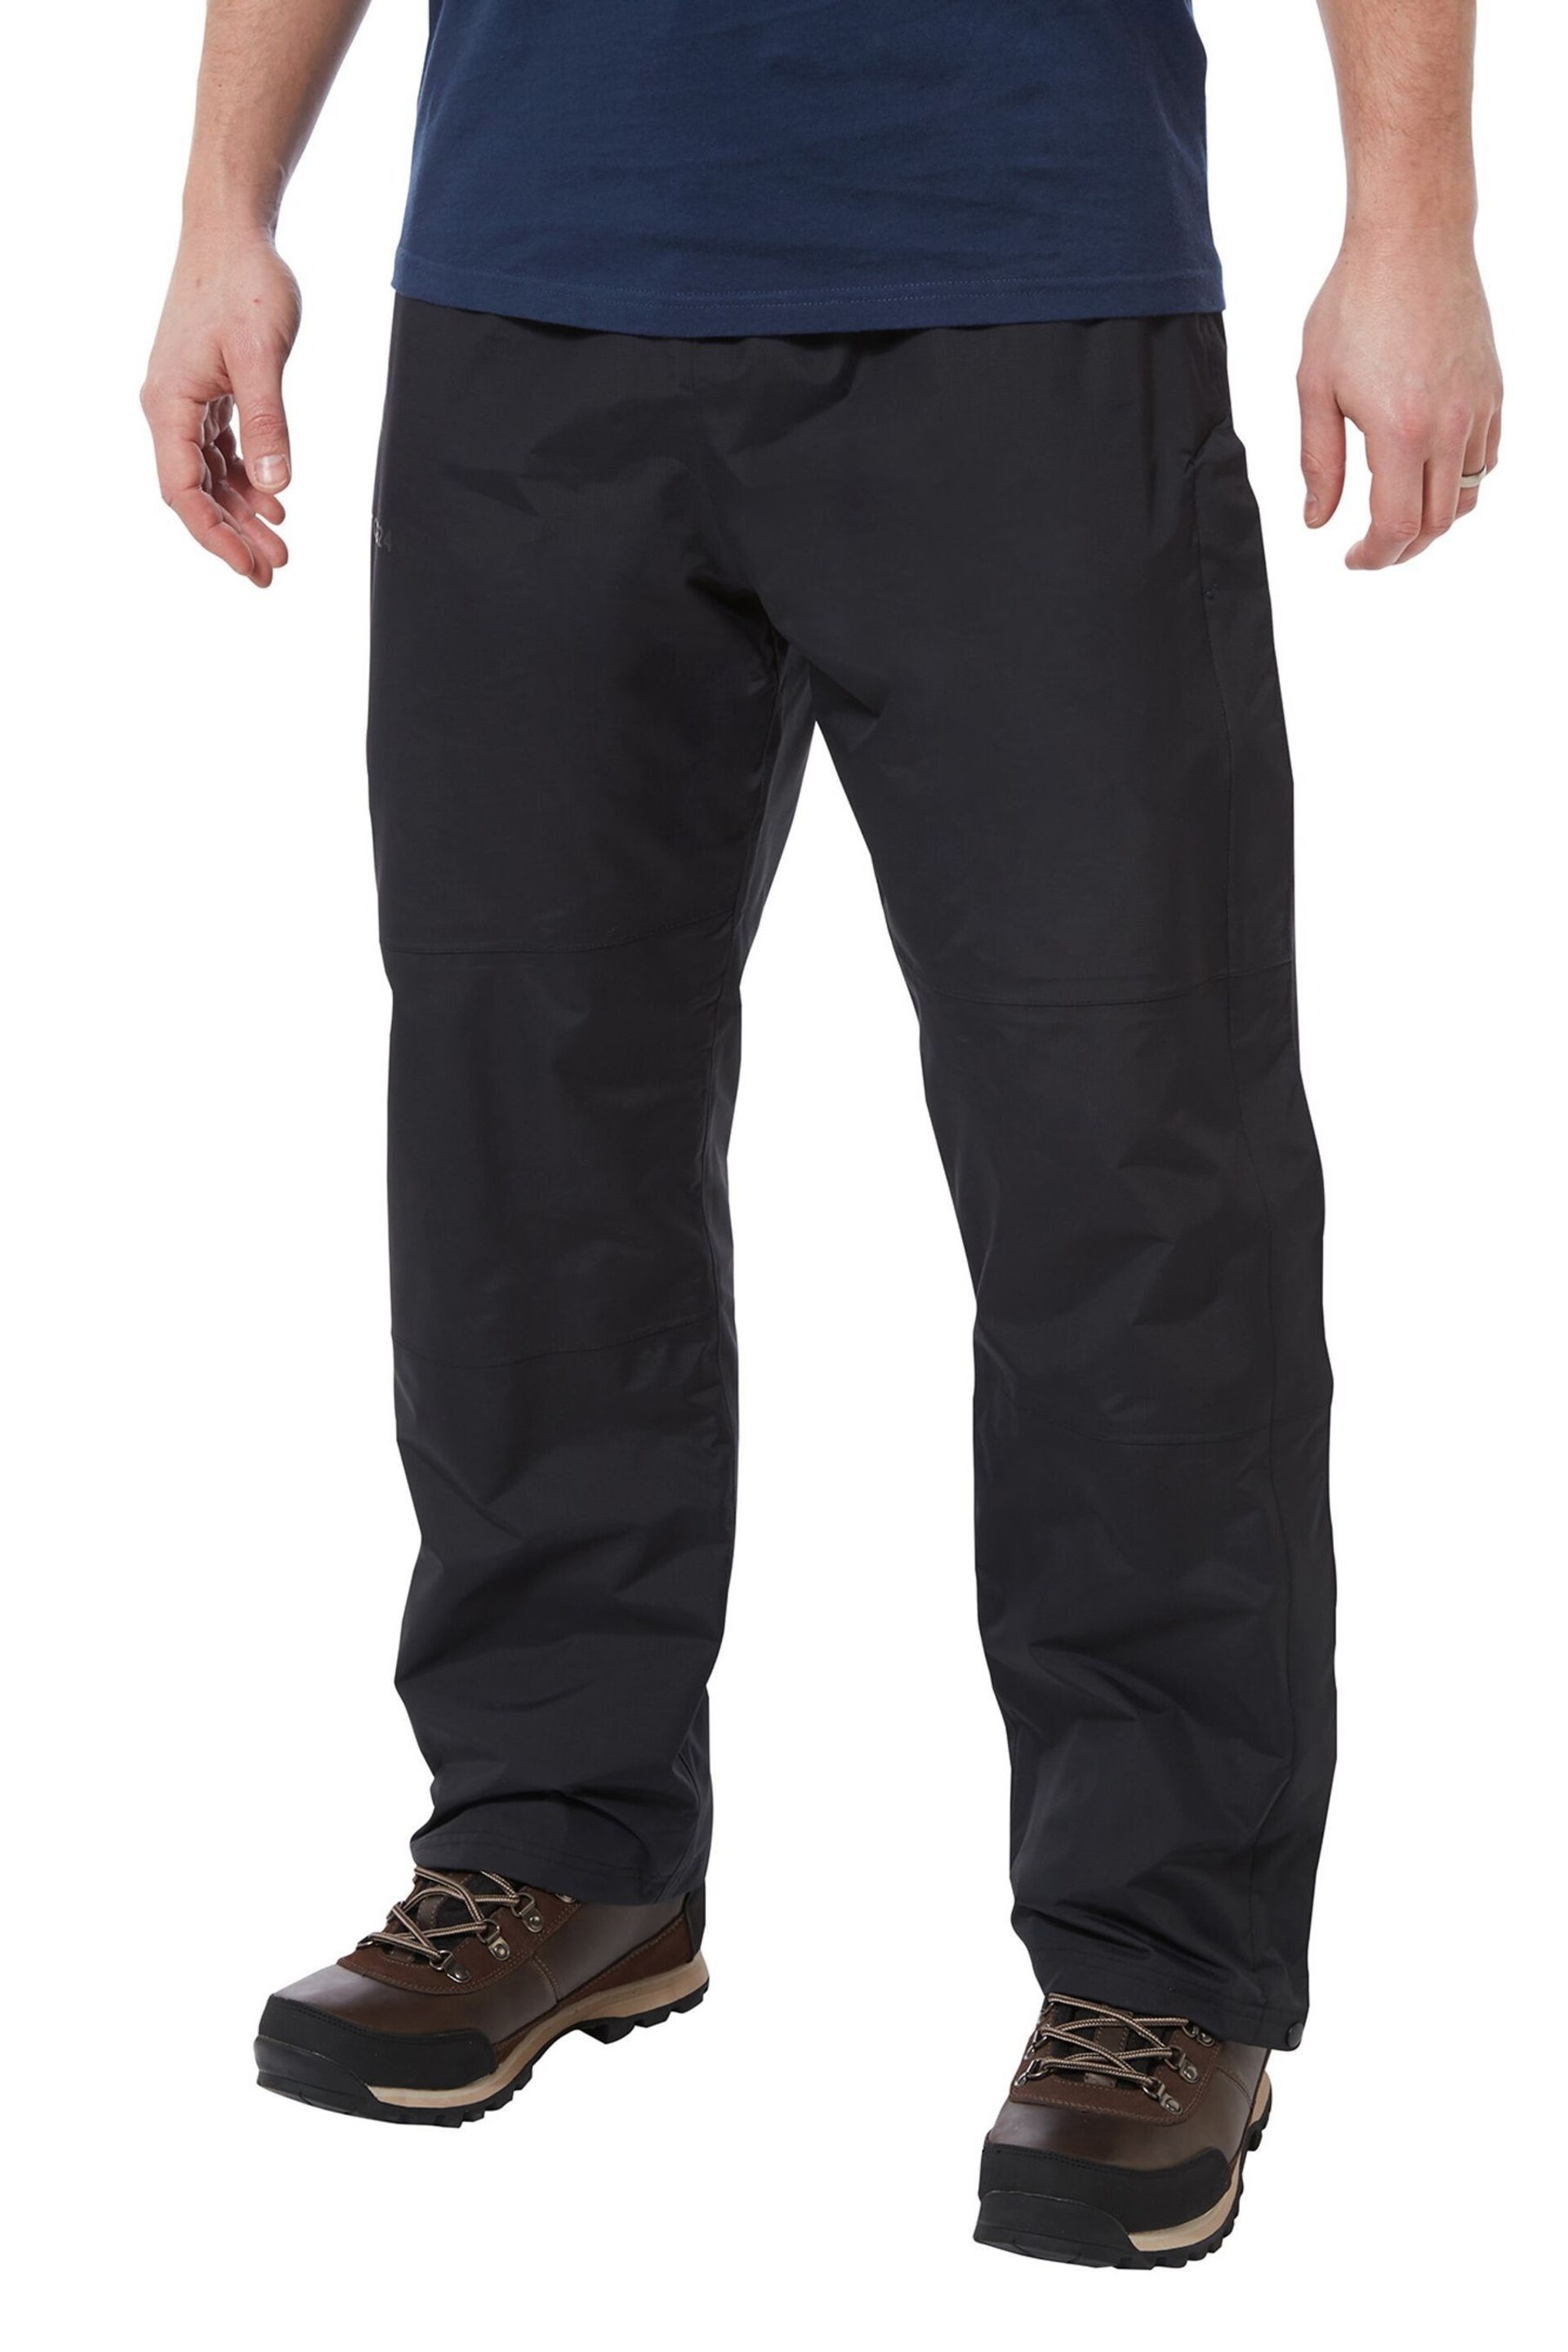 Tog 24 Cool Black Steward Waterproof Trousers - Image 1 of 1